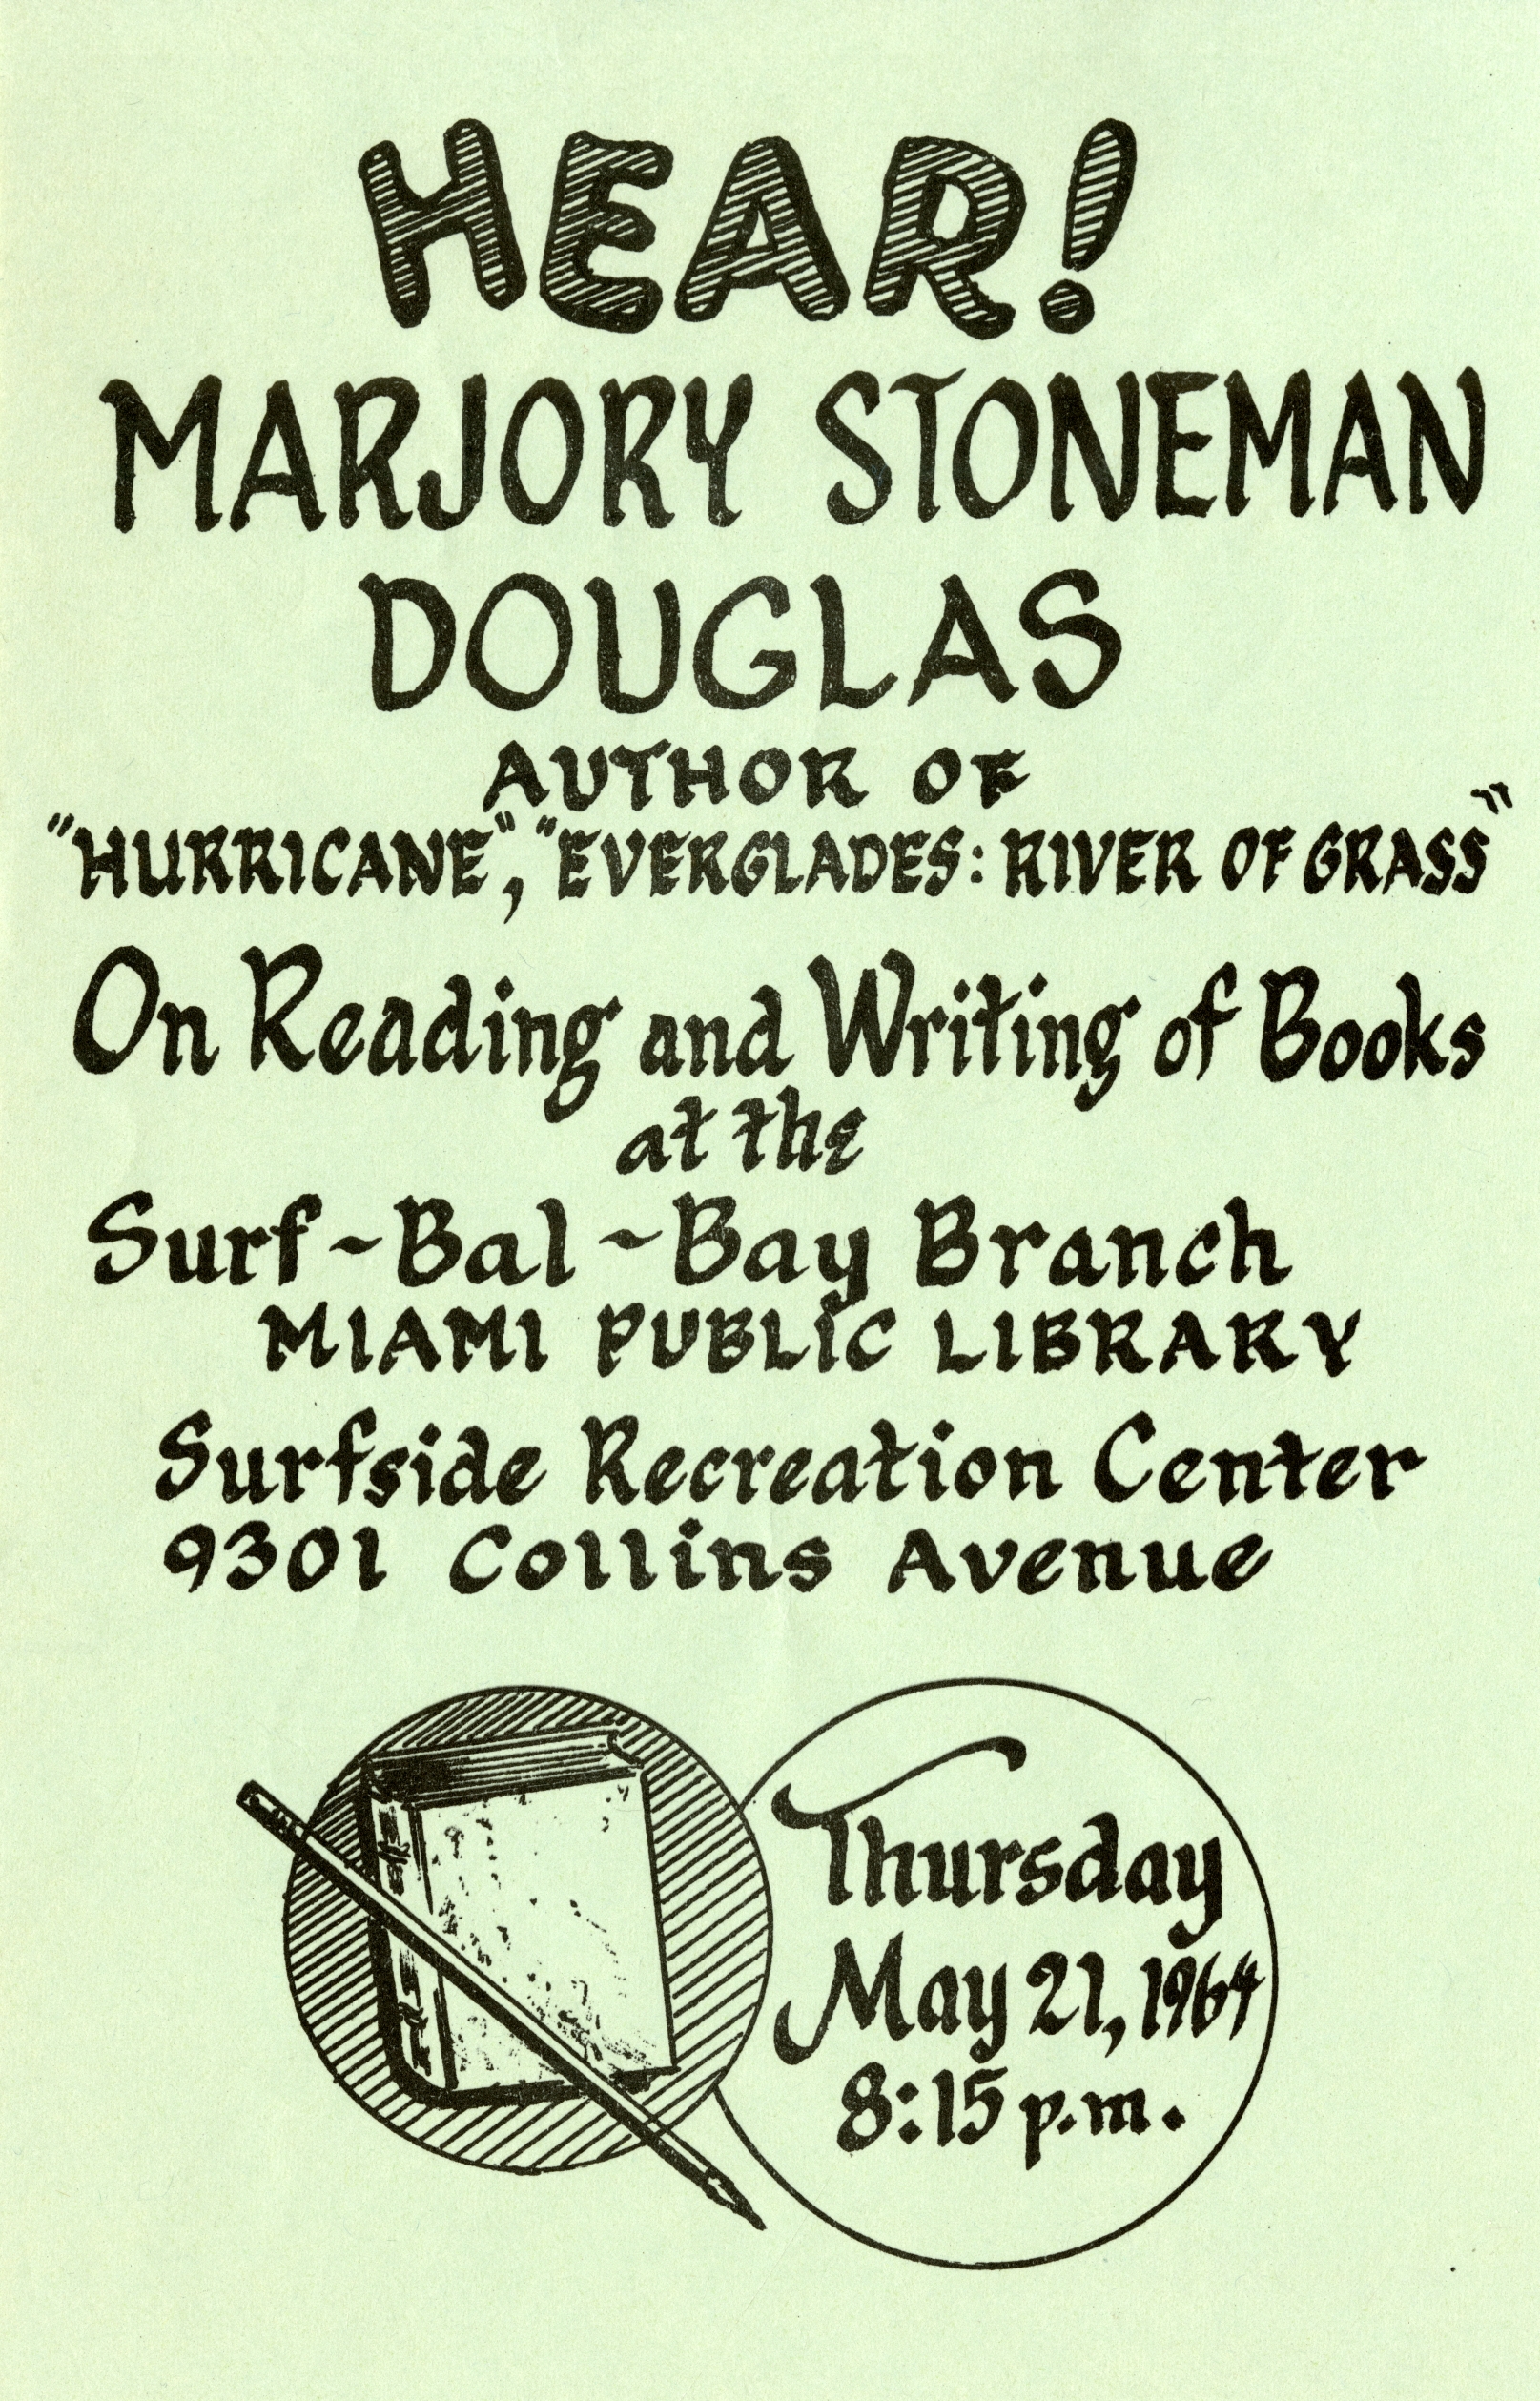 Flier promoting a talk by Marjory Stoneman Douglas, 1964